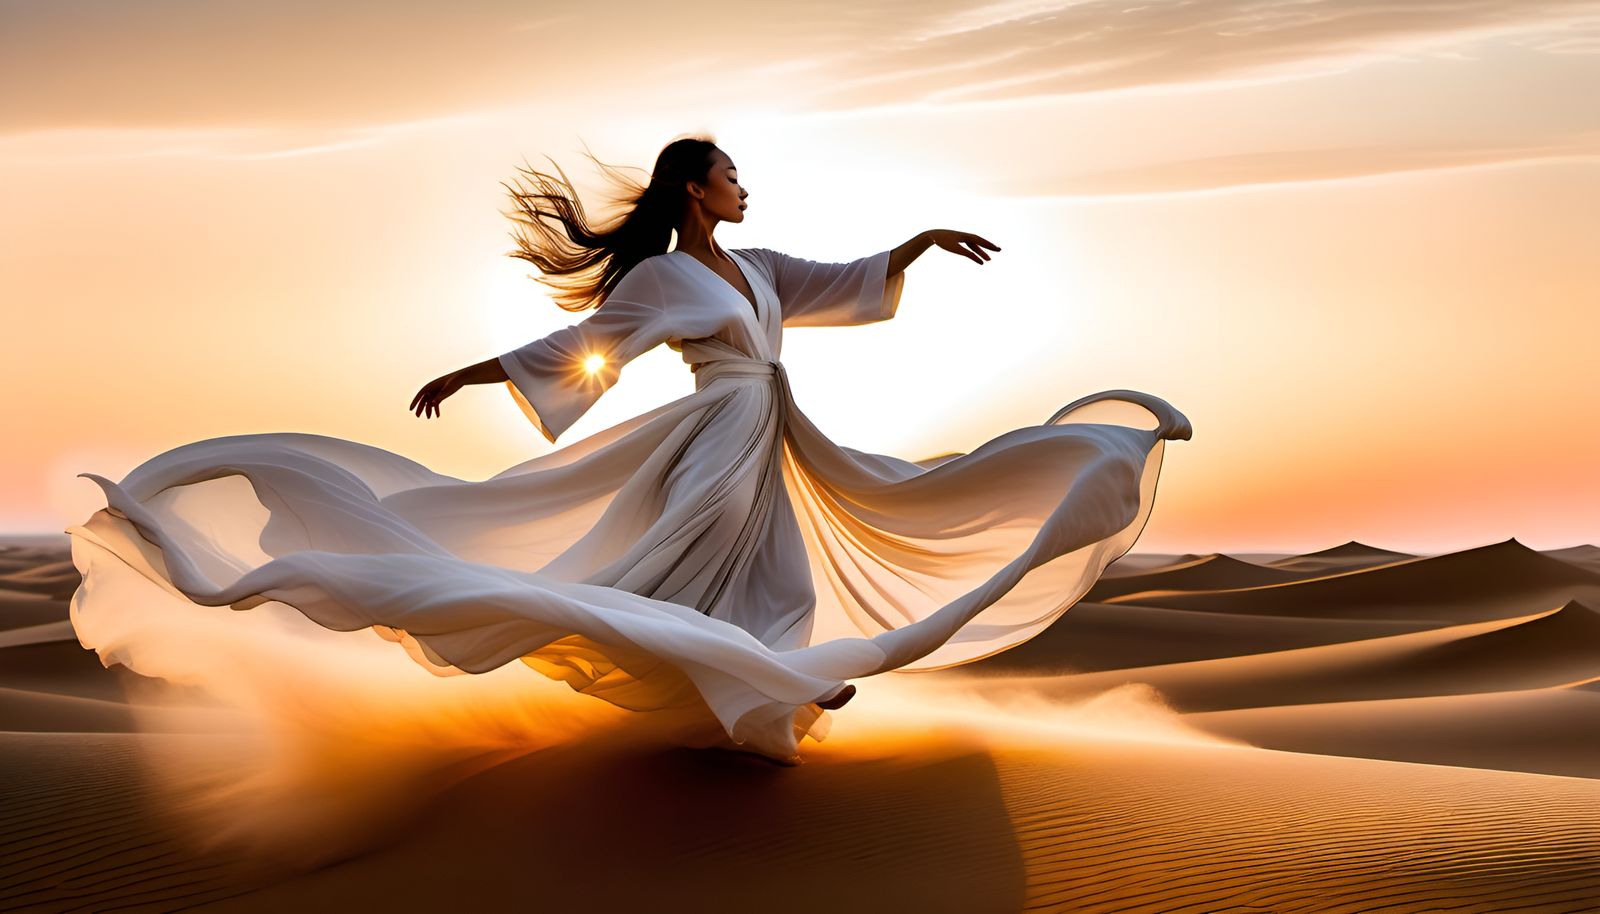 Dancer in the Desert